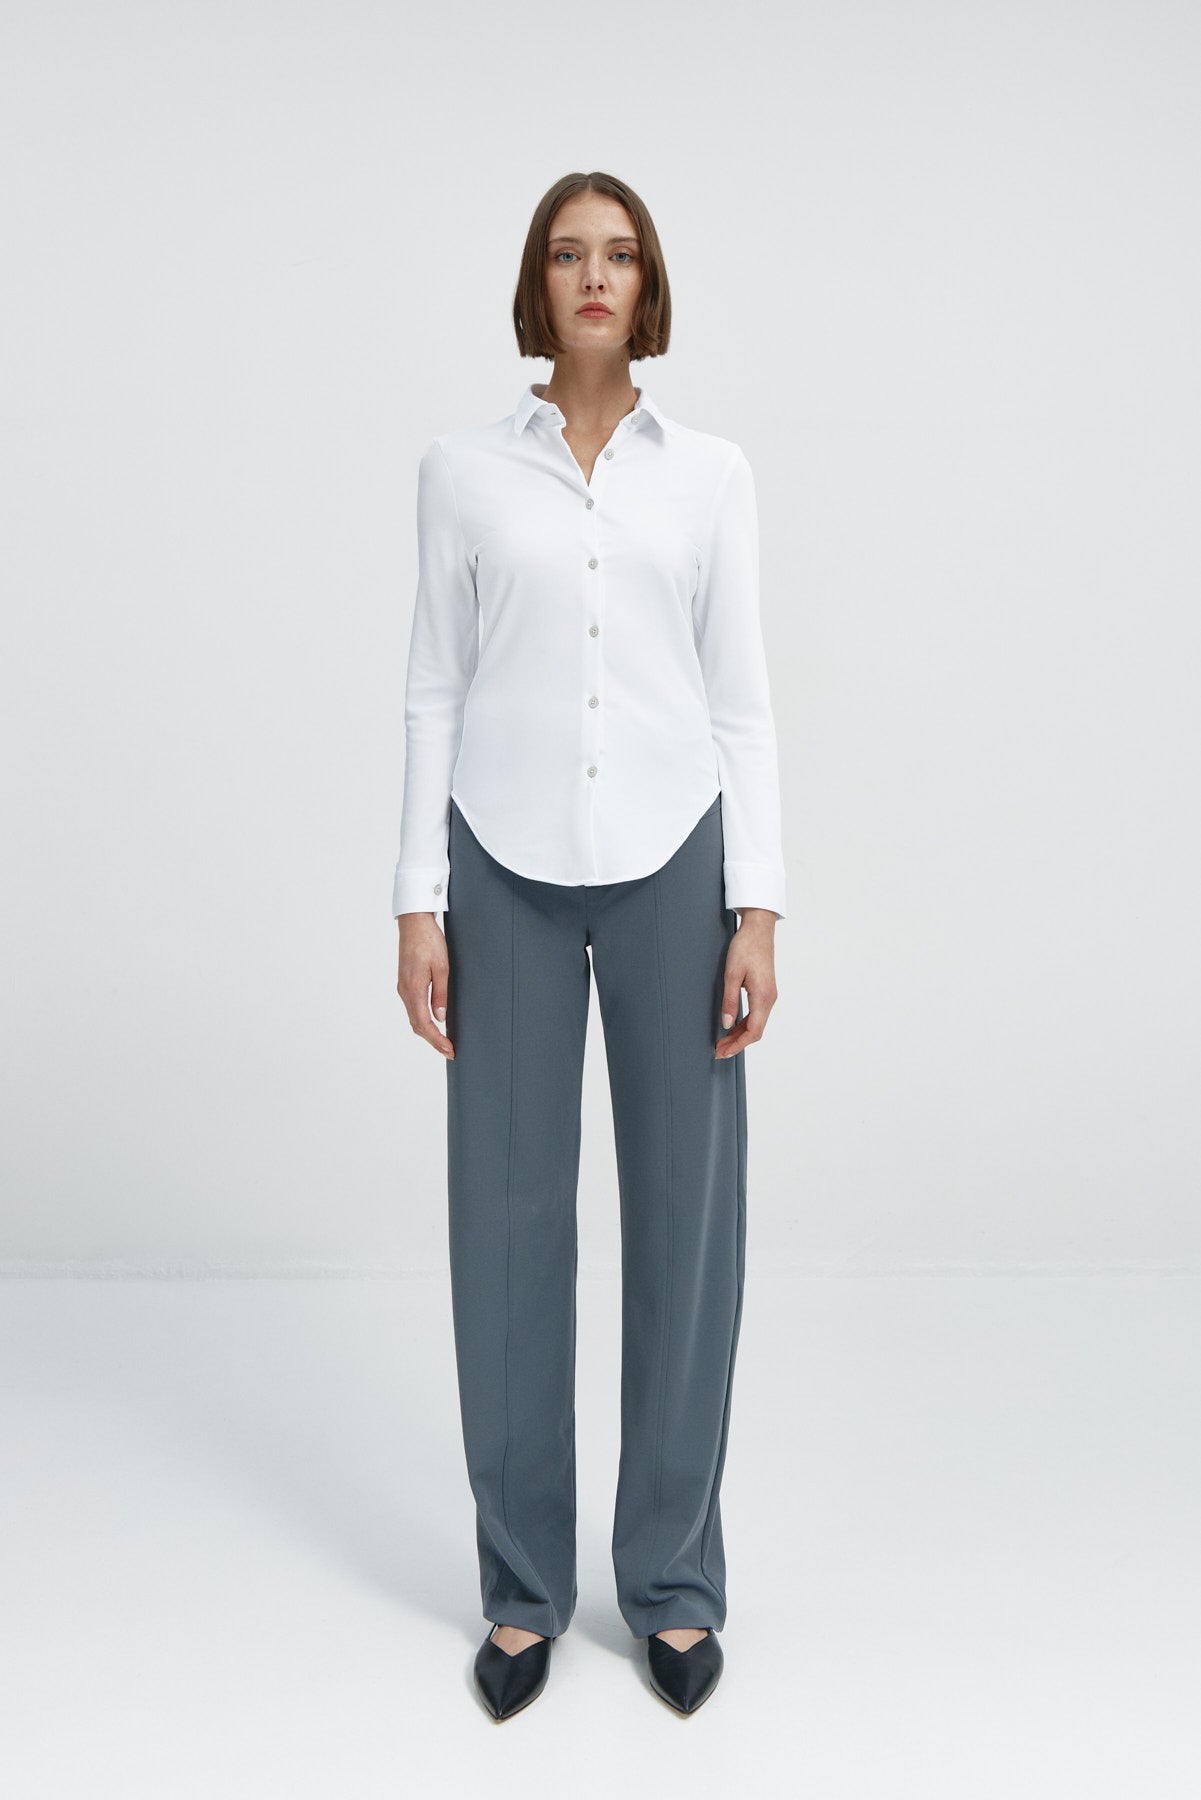  Camisa para mujer slim color blanco, básica y versátil. Foto cuerpo entero